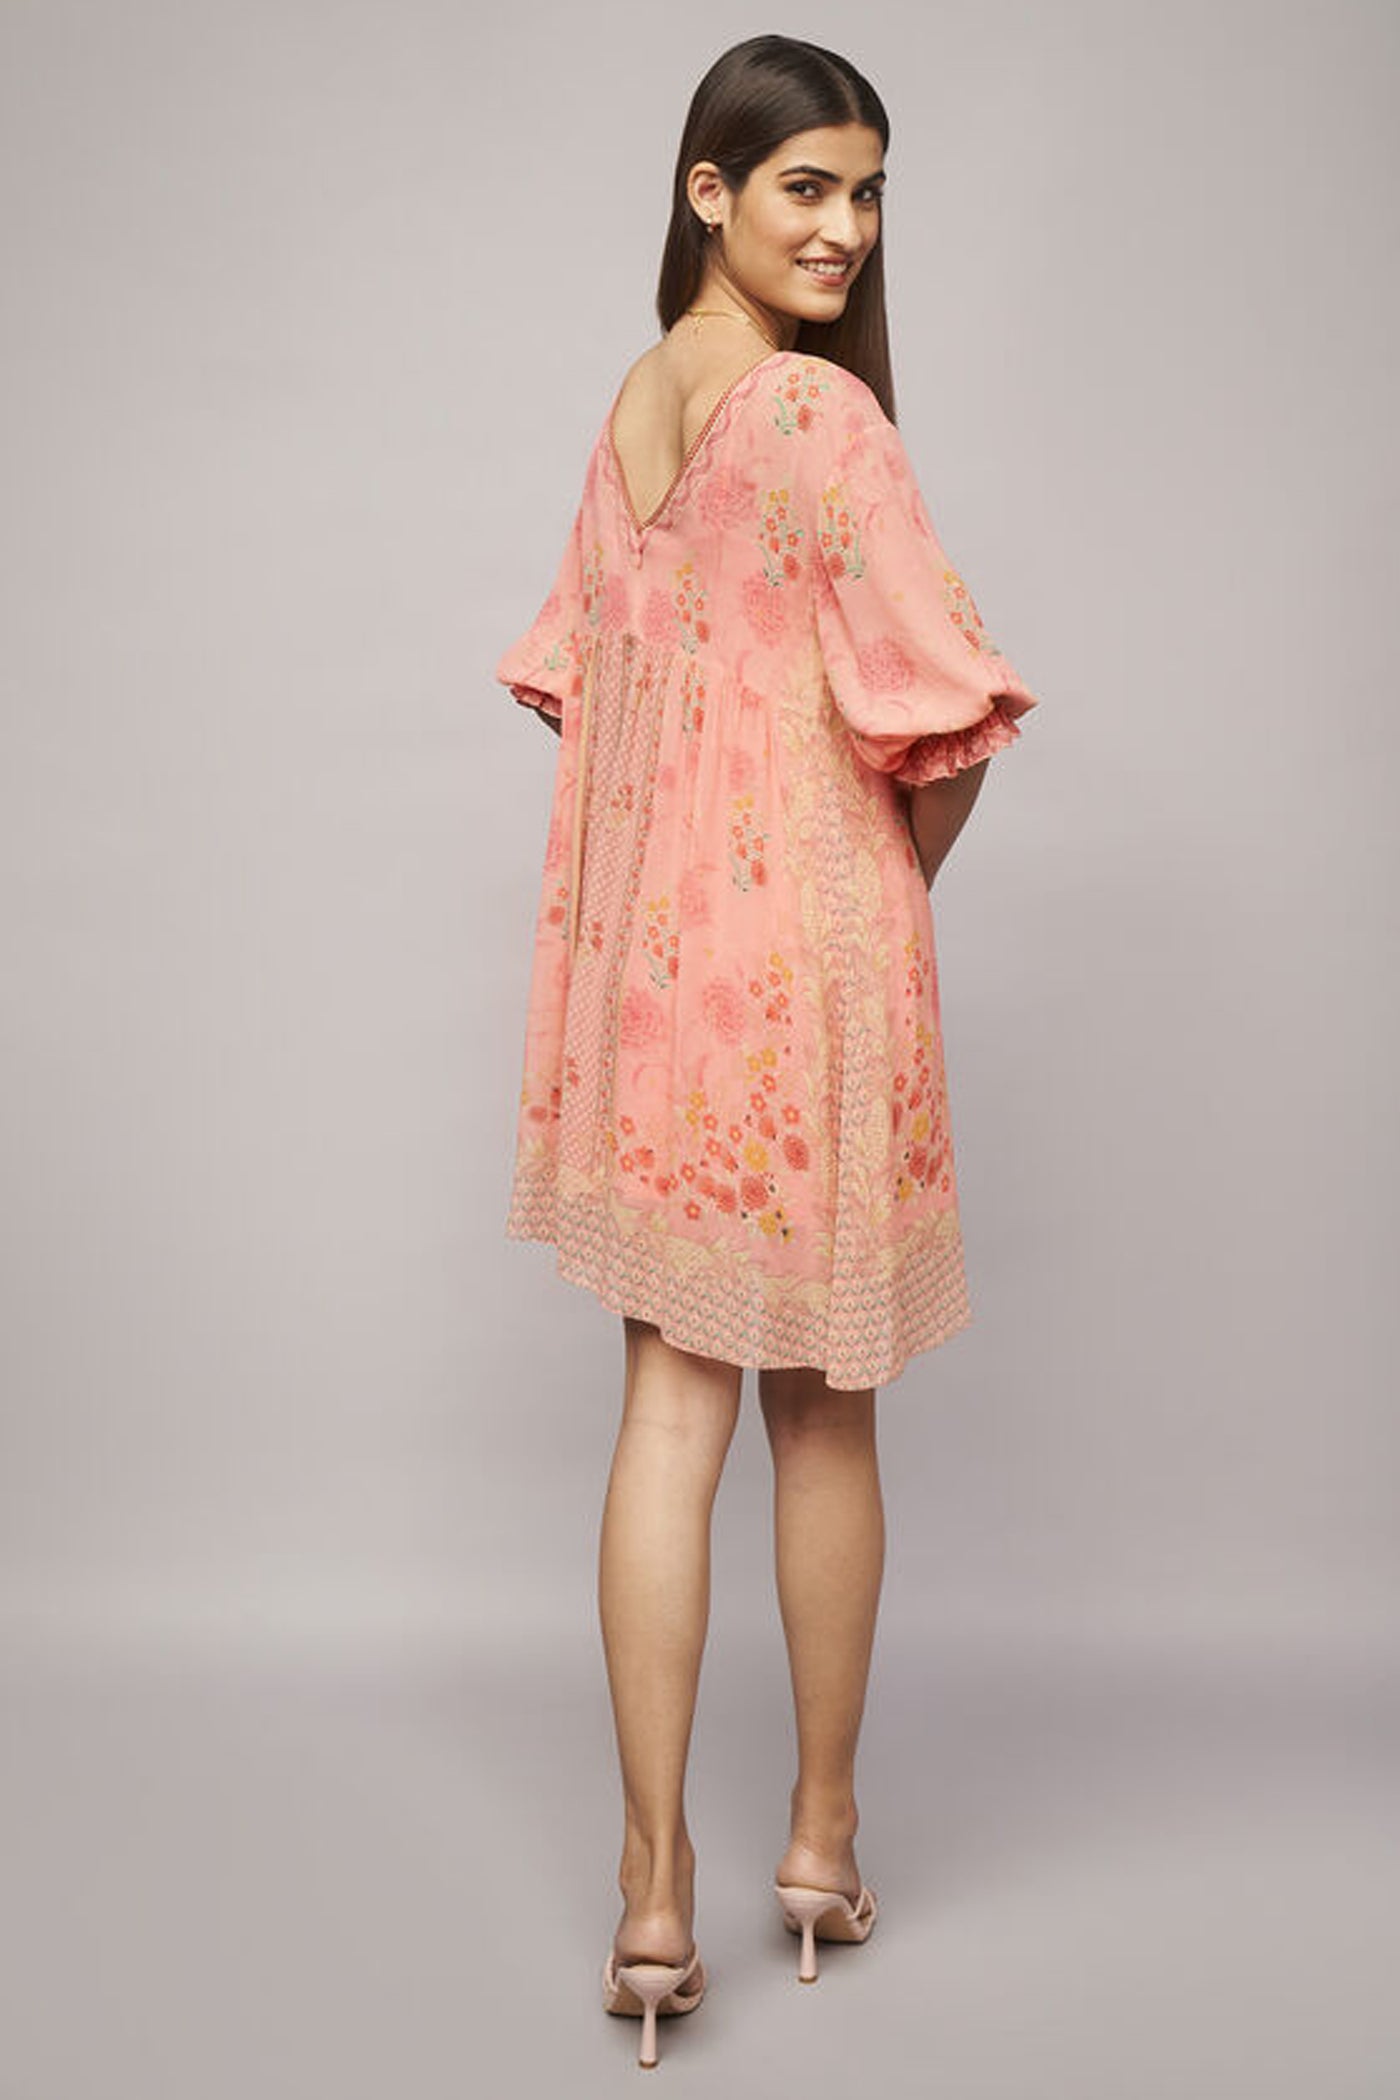 Anita Dongre Mirvat Dress Pink indian designer wear online shopping melange singapore